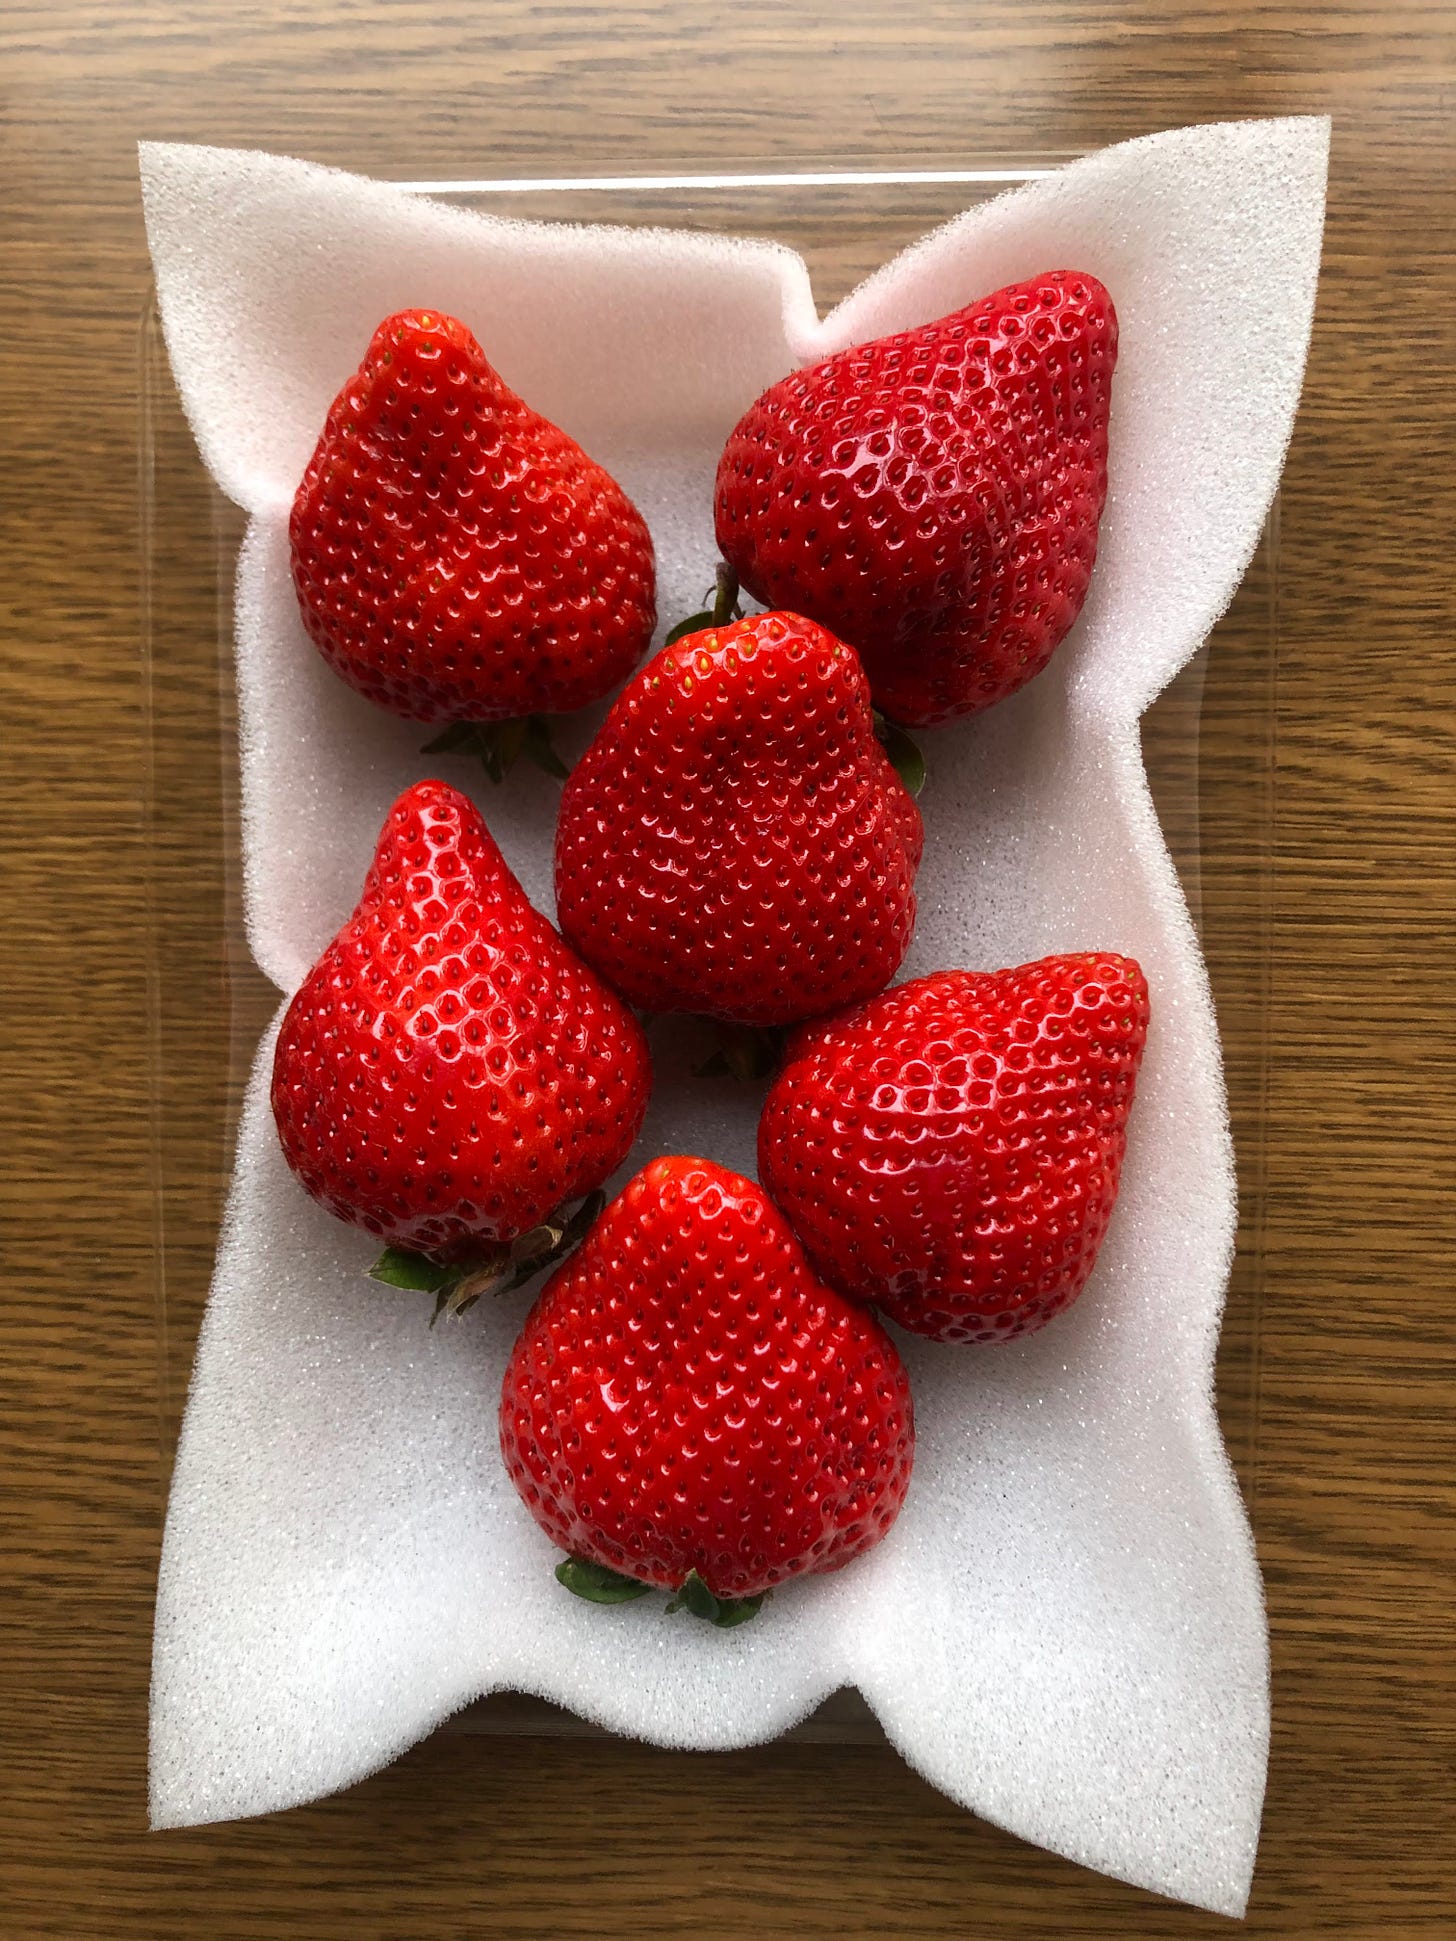 Six amaou strawberries